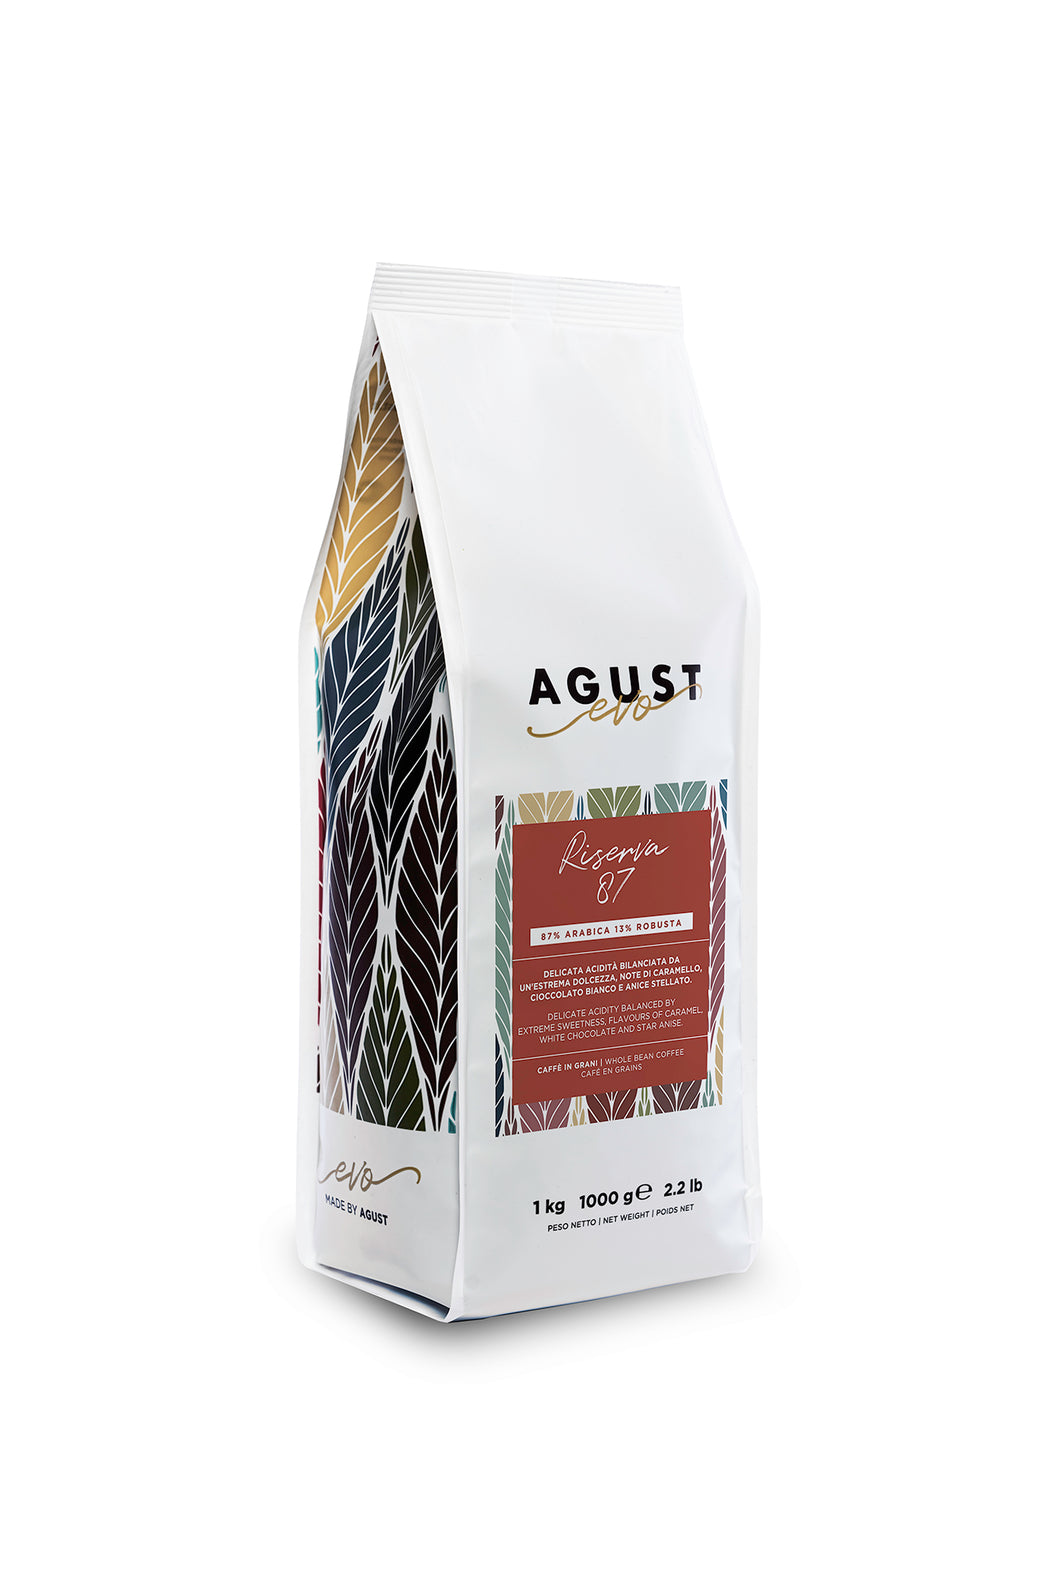 Caffè Agust Riserva 87 roasted organic coffee beans